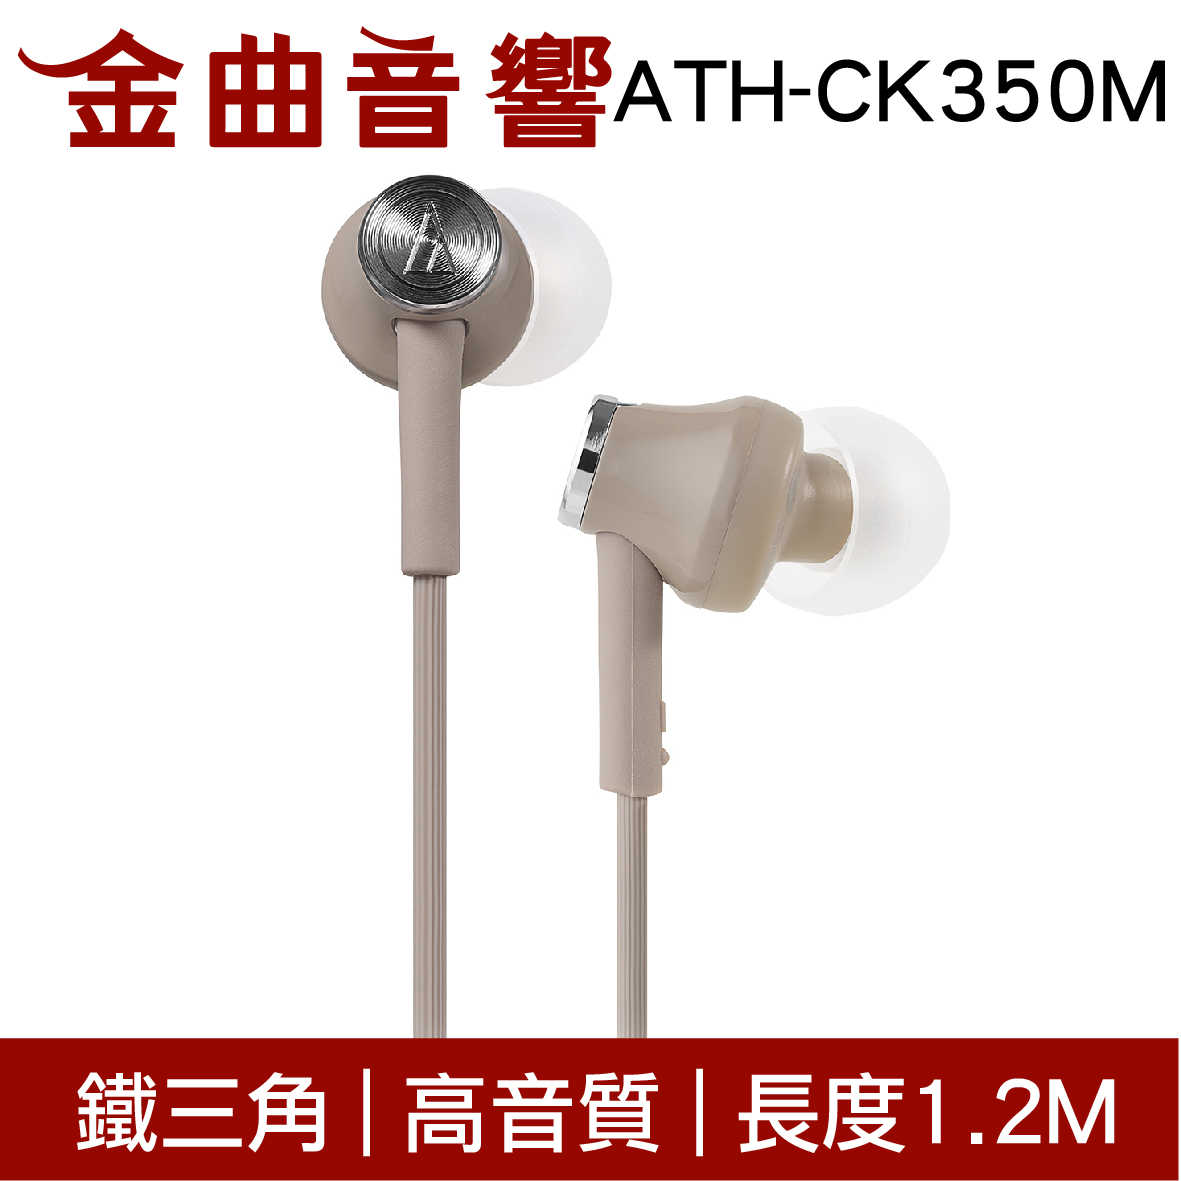 鐵三角 ATH-CK350M 米色 高音質耳道式耳機 | 金曲音響